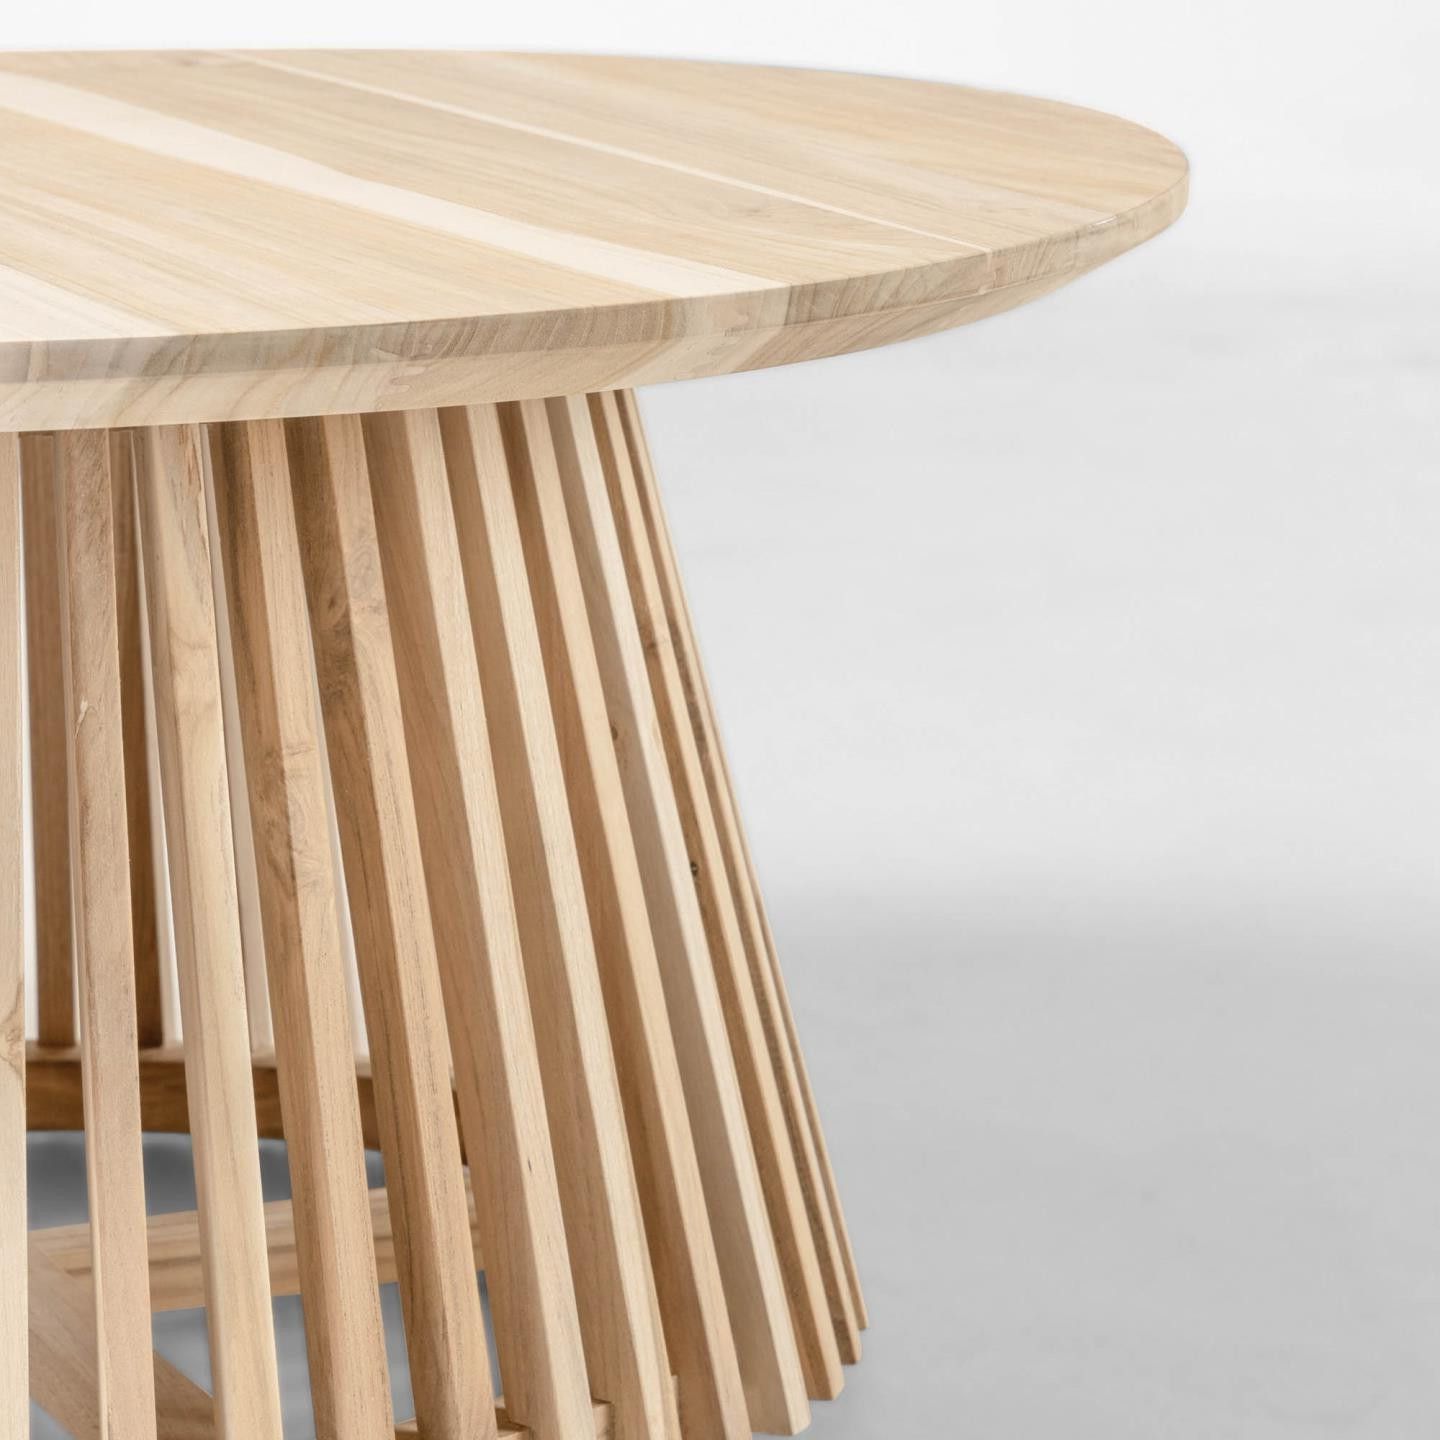 Esa Teak Wood Ø 80 Cm Coffee Table For 2019 Solid Teak Wood Coffee Tables (View 3 of 20)